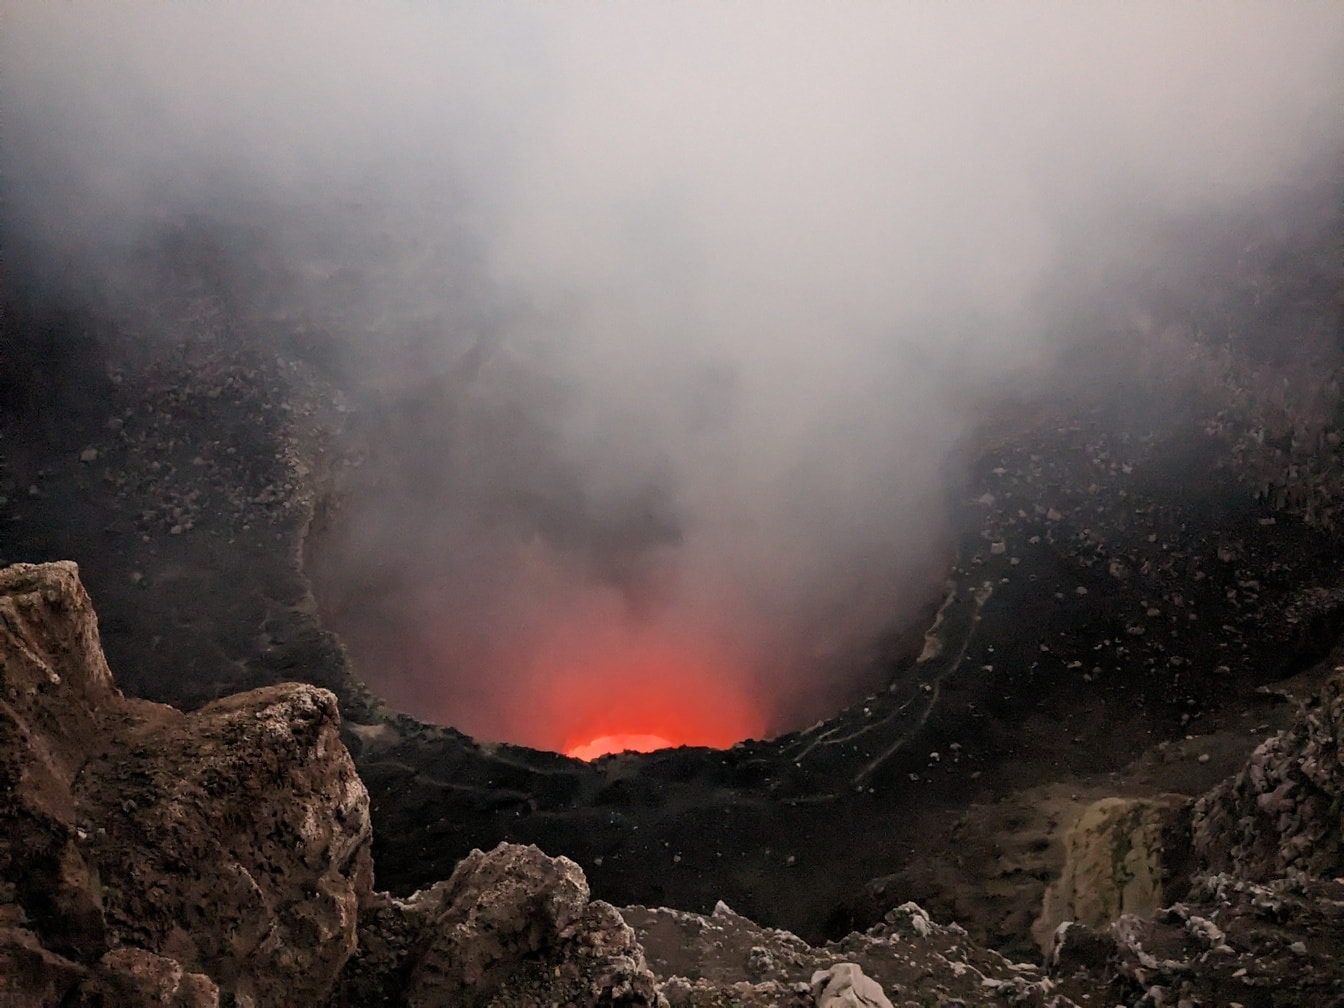 Vulkanutbrudd med varm magma og damp som kommer ut av vulkankrateret